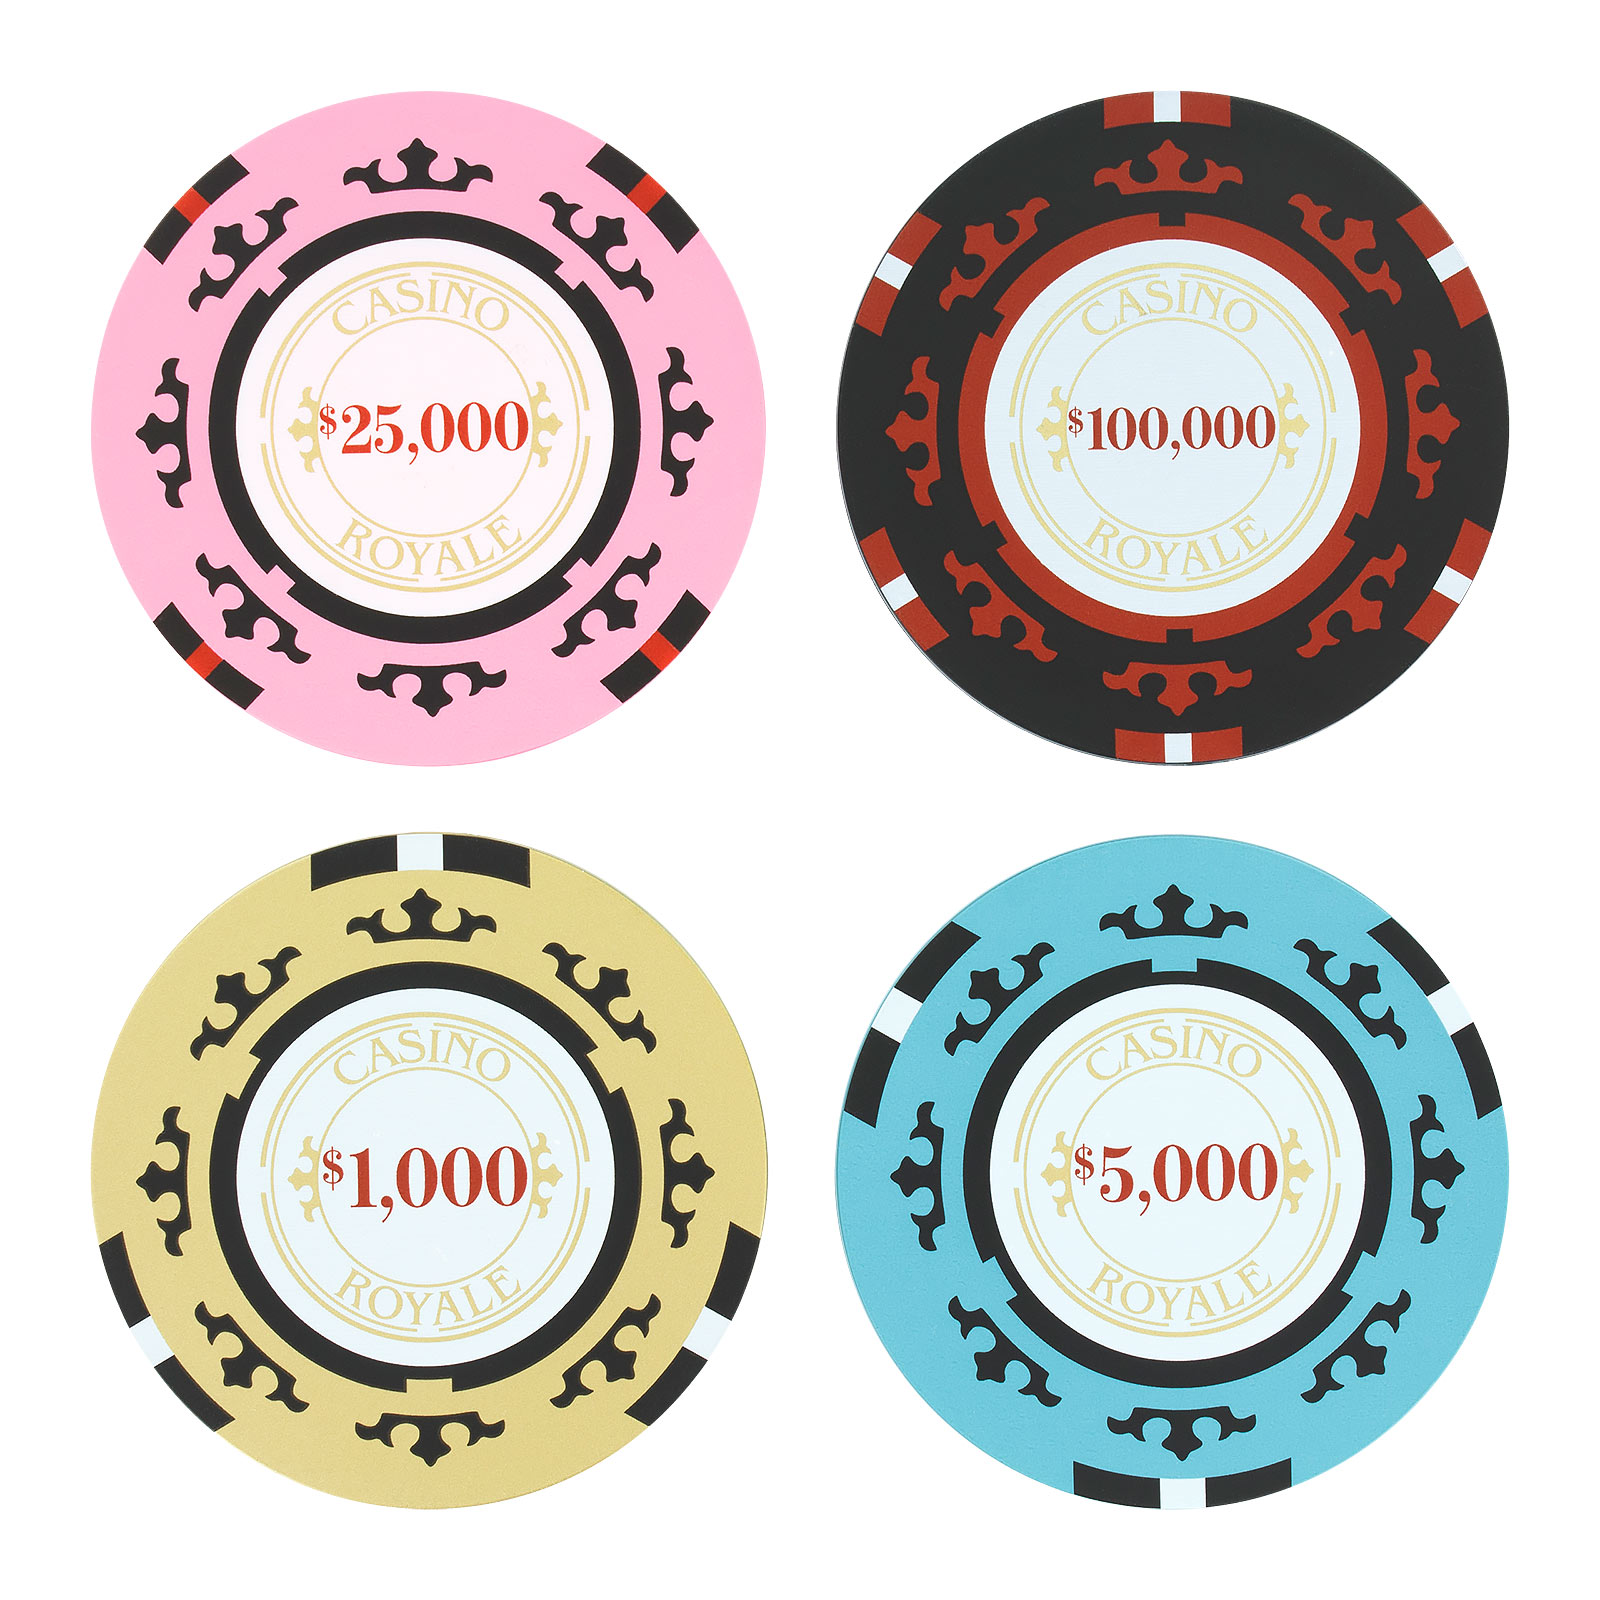 James Bond - Sous-verres Poker Chip Casino Royale Ensemble de 4